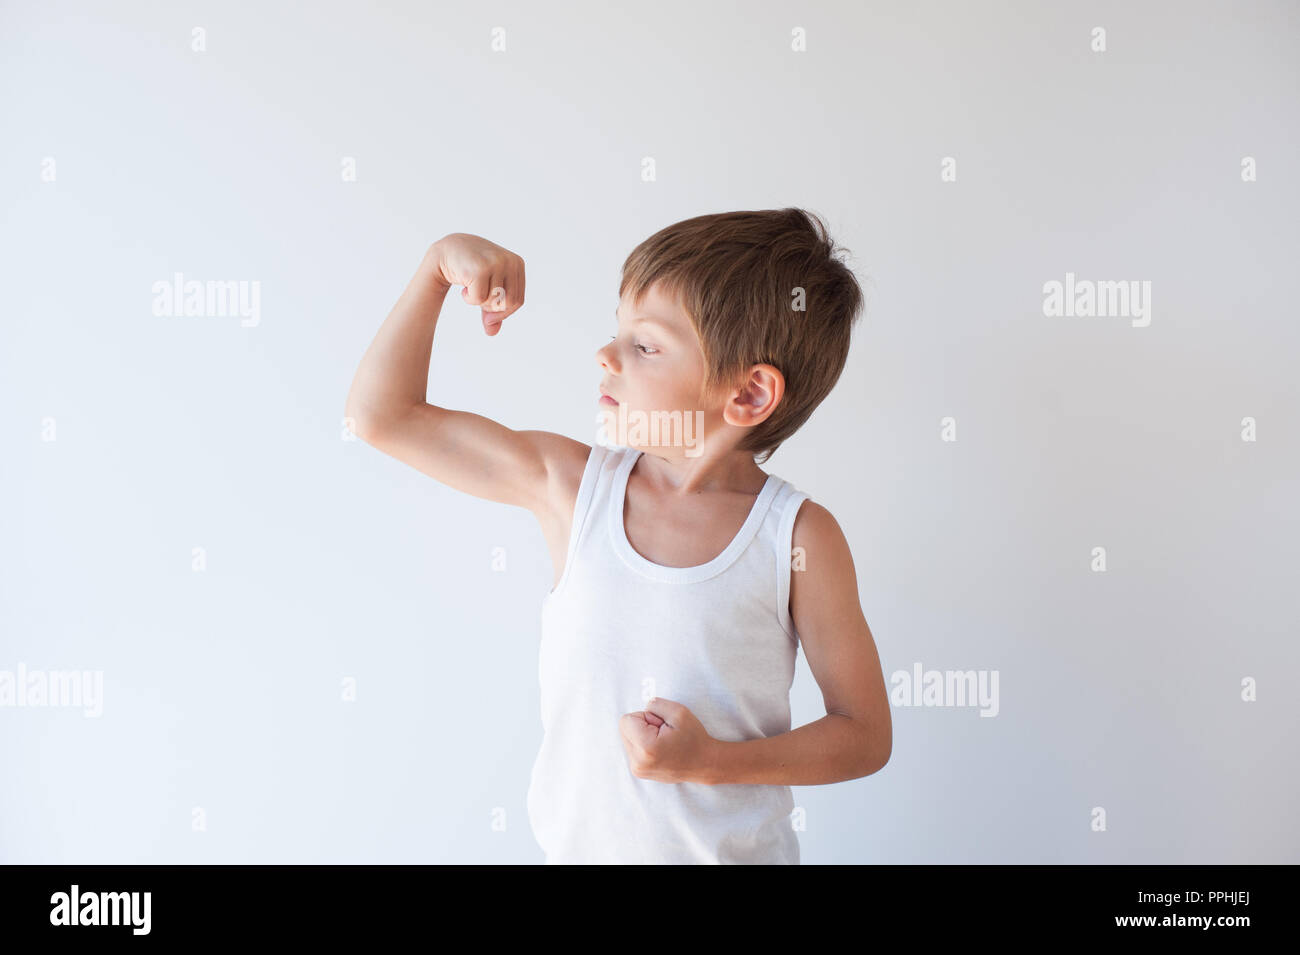 Schöne gesunde wenig starke Kind in weißem Hemd seinen Bizeps Muskeln angezeigt Stockfoto